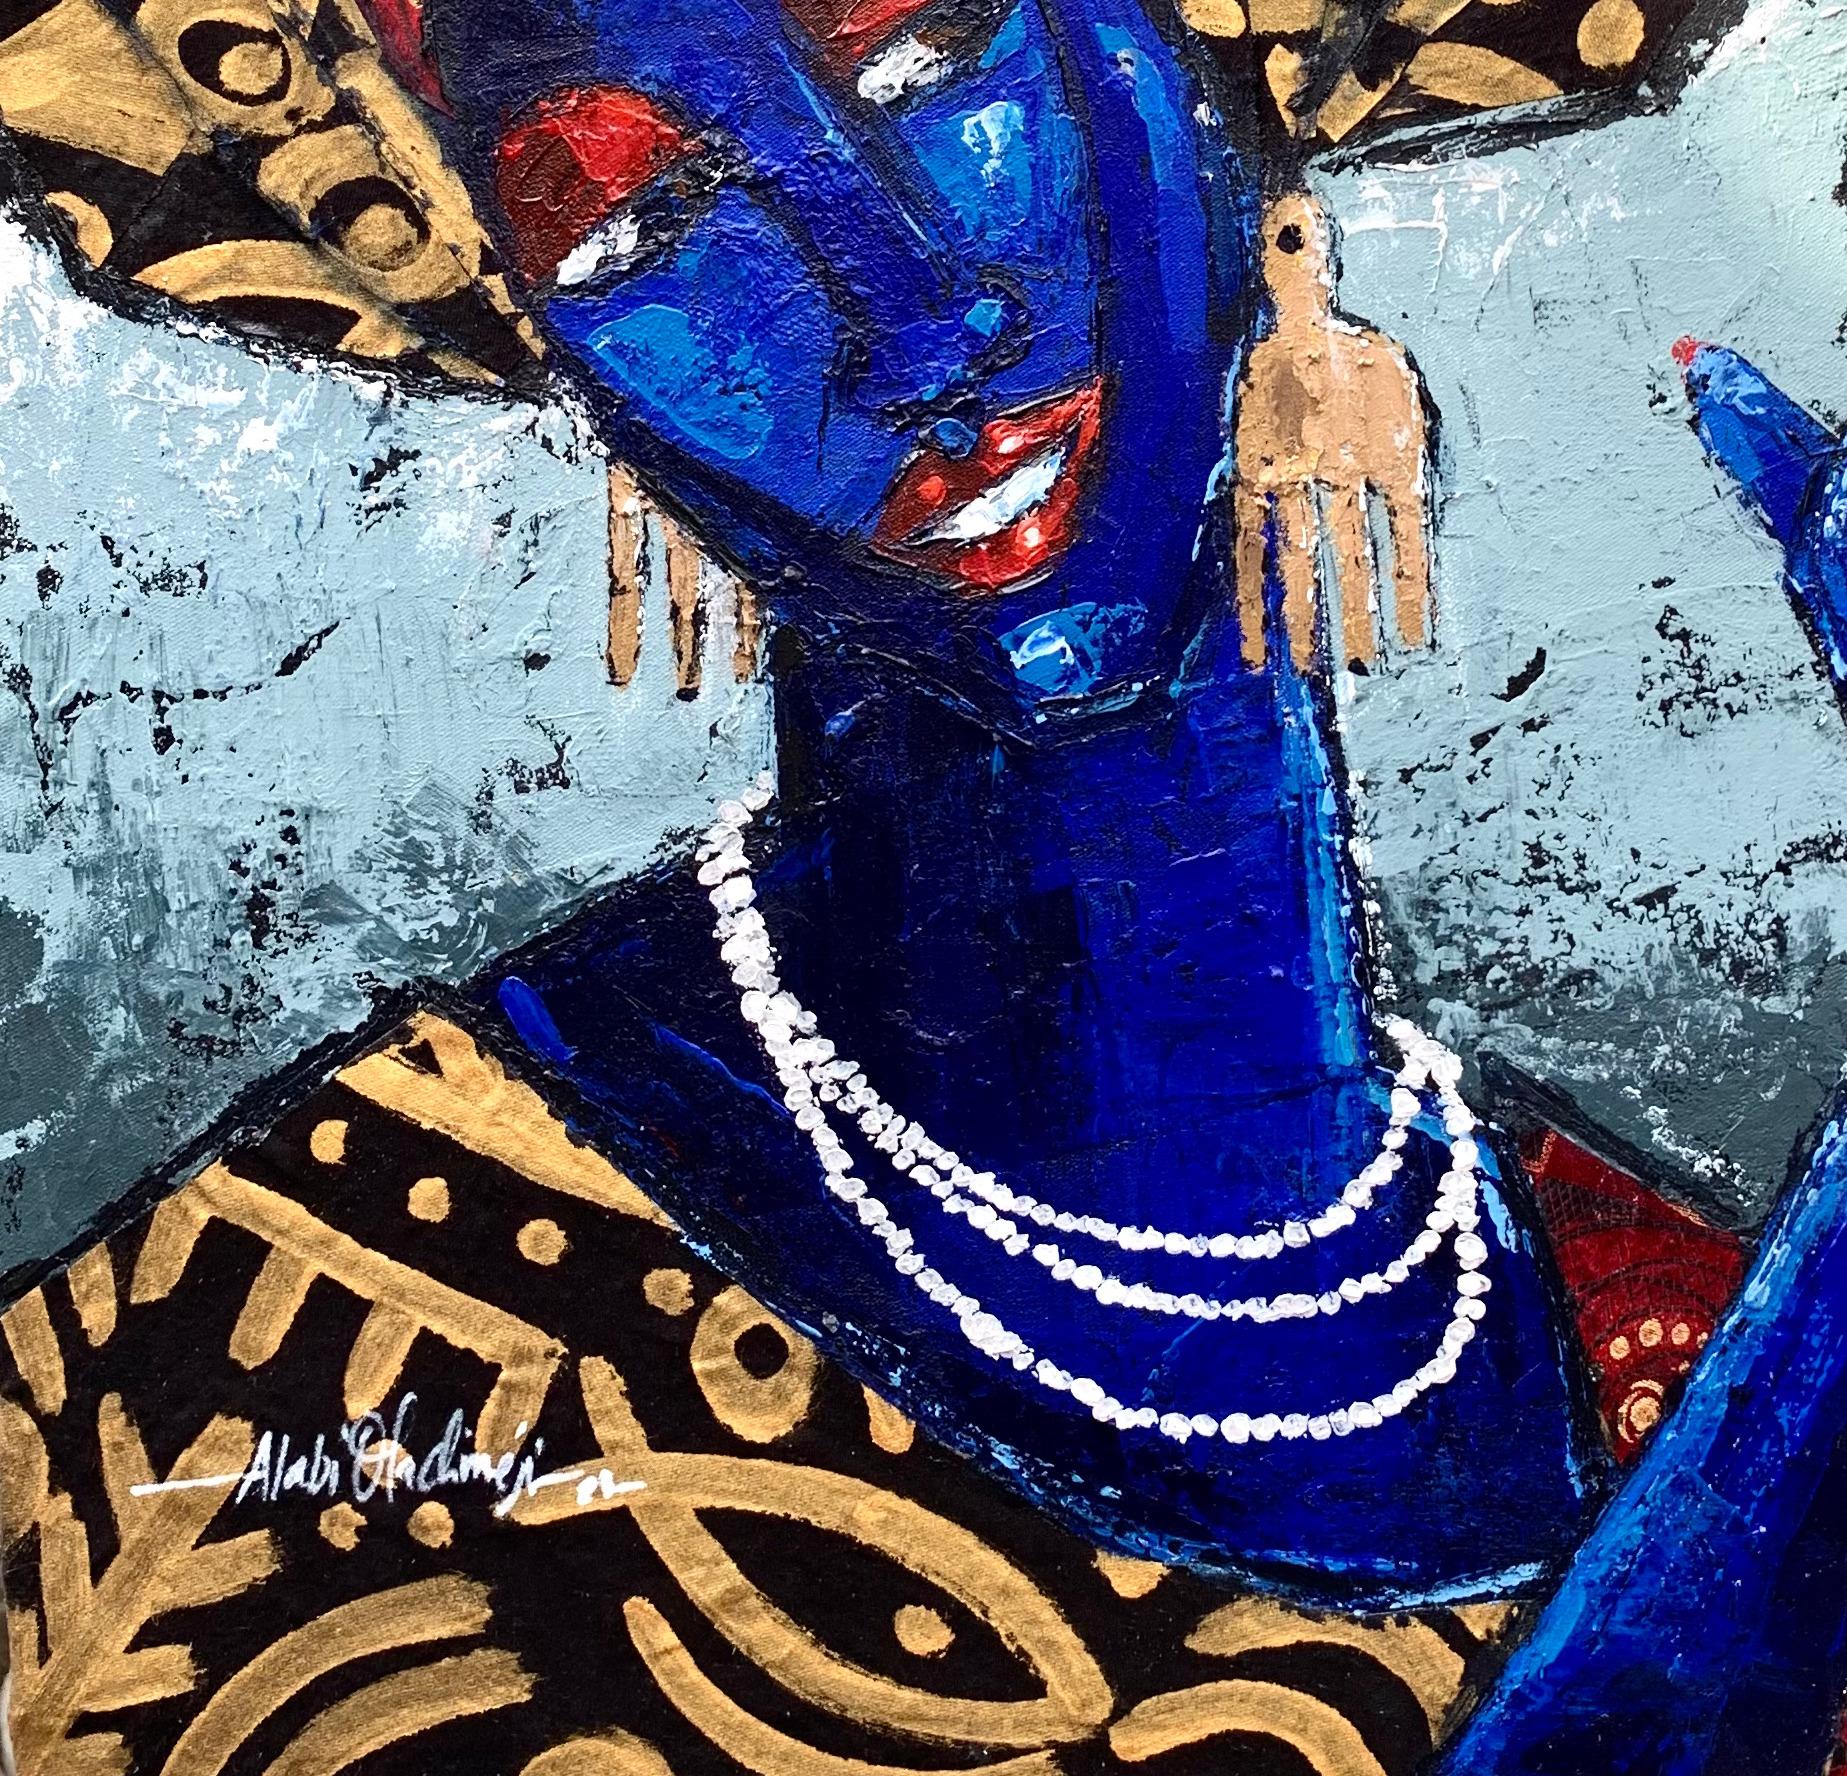 Obirin Asiko (Modische Frau) ist ein Originalgemälde von Oladimeji Alabi. Oladimeji schuf das Bild Obirin Asiko (Modische Frau) mit gemischten Medien auf einer grundierten Leinwand im Format 21 B x 24 H.

Dieses Gemälde soll die Einzigartigkeit des